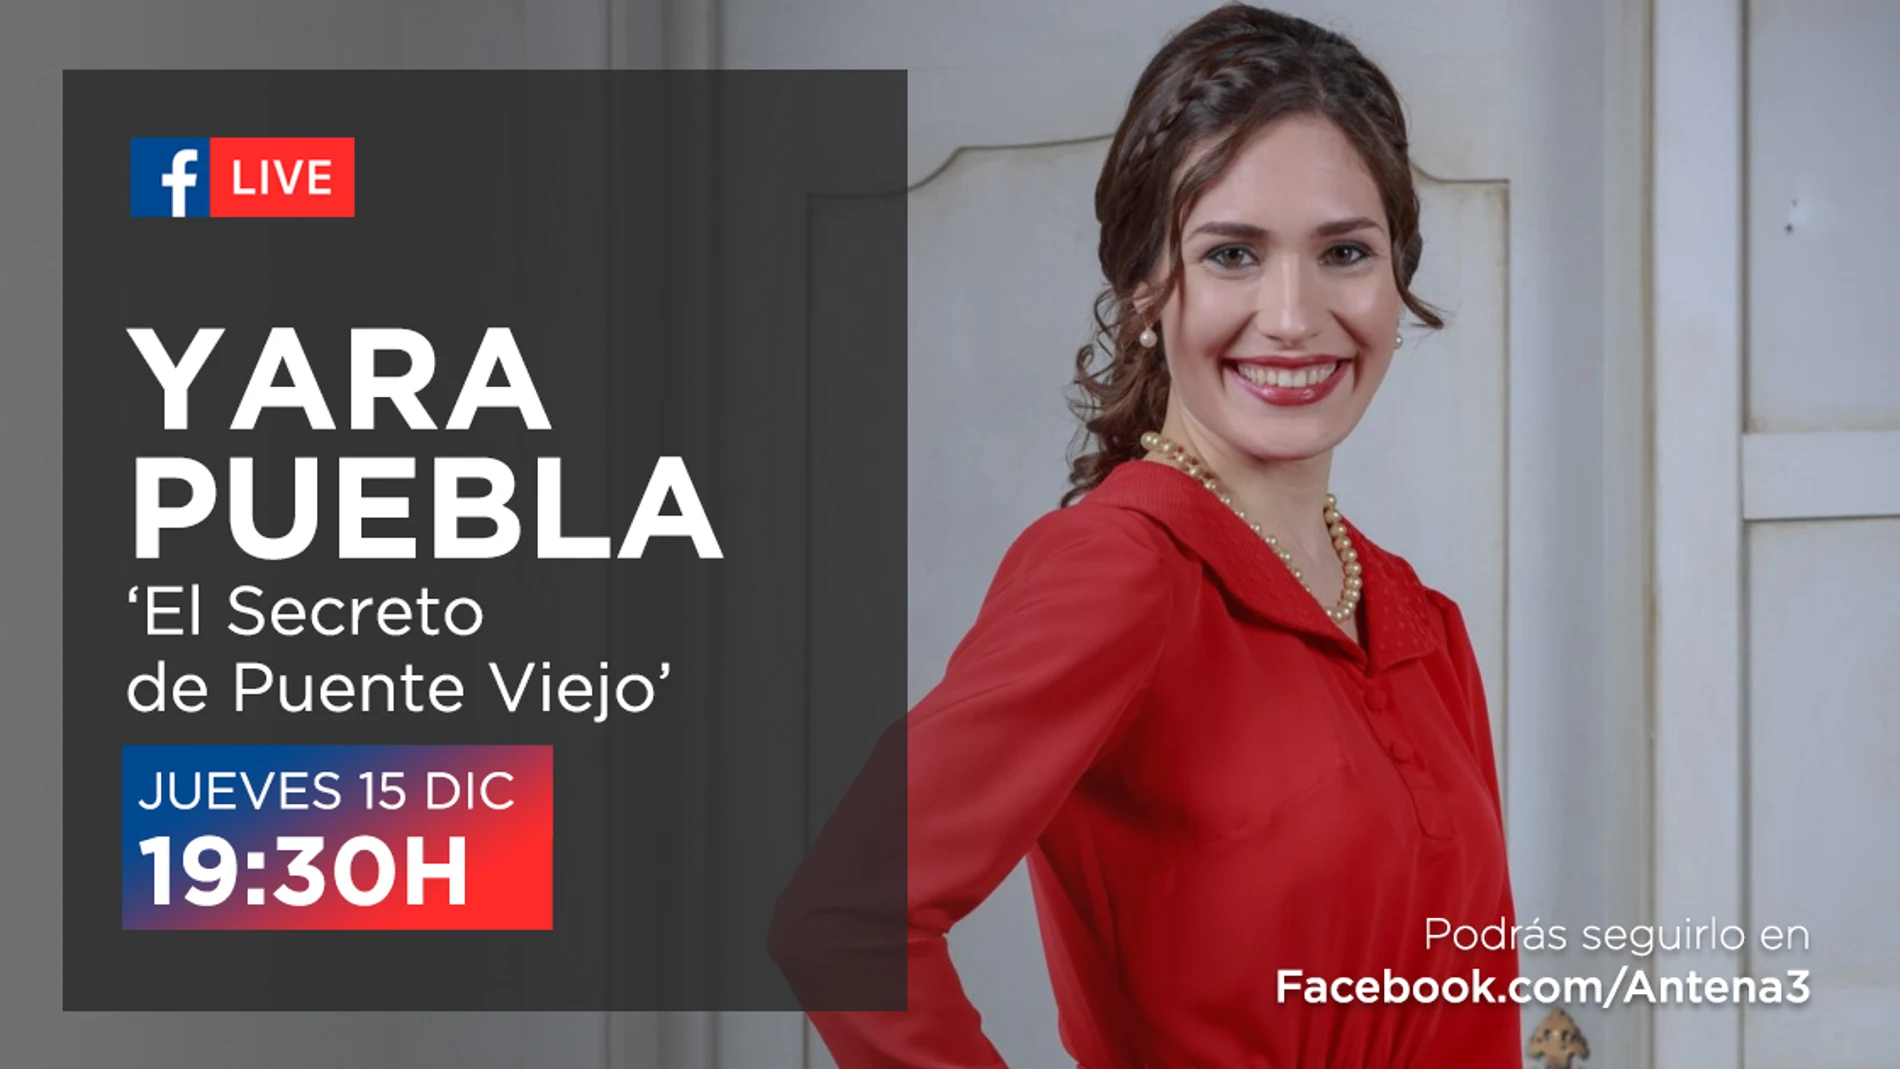 Yara Puebla estará en directo con los seguidores de la serie a través de Facebook Live